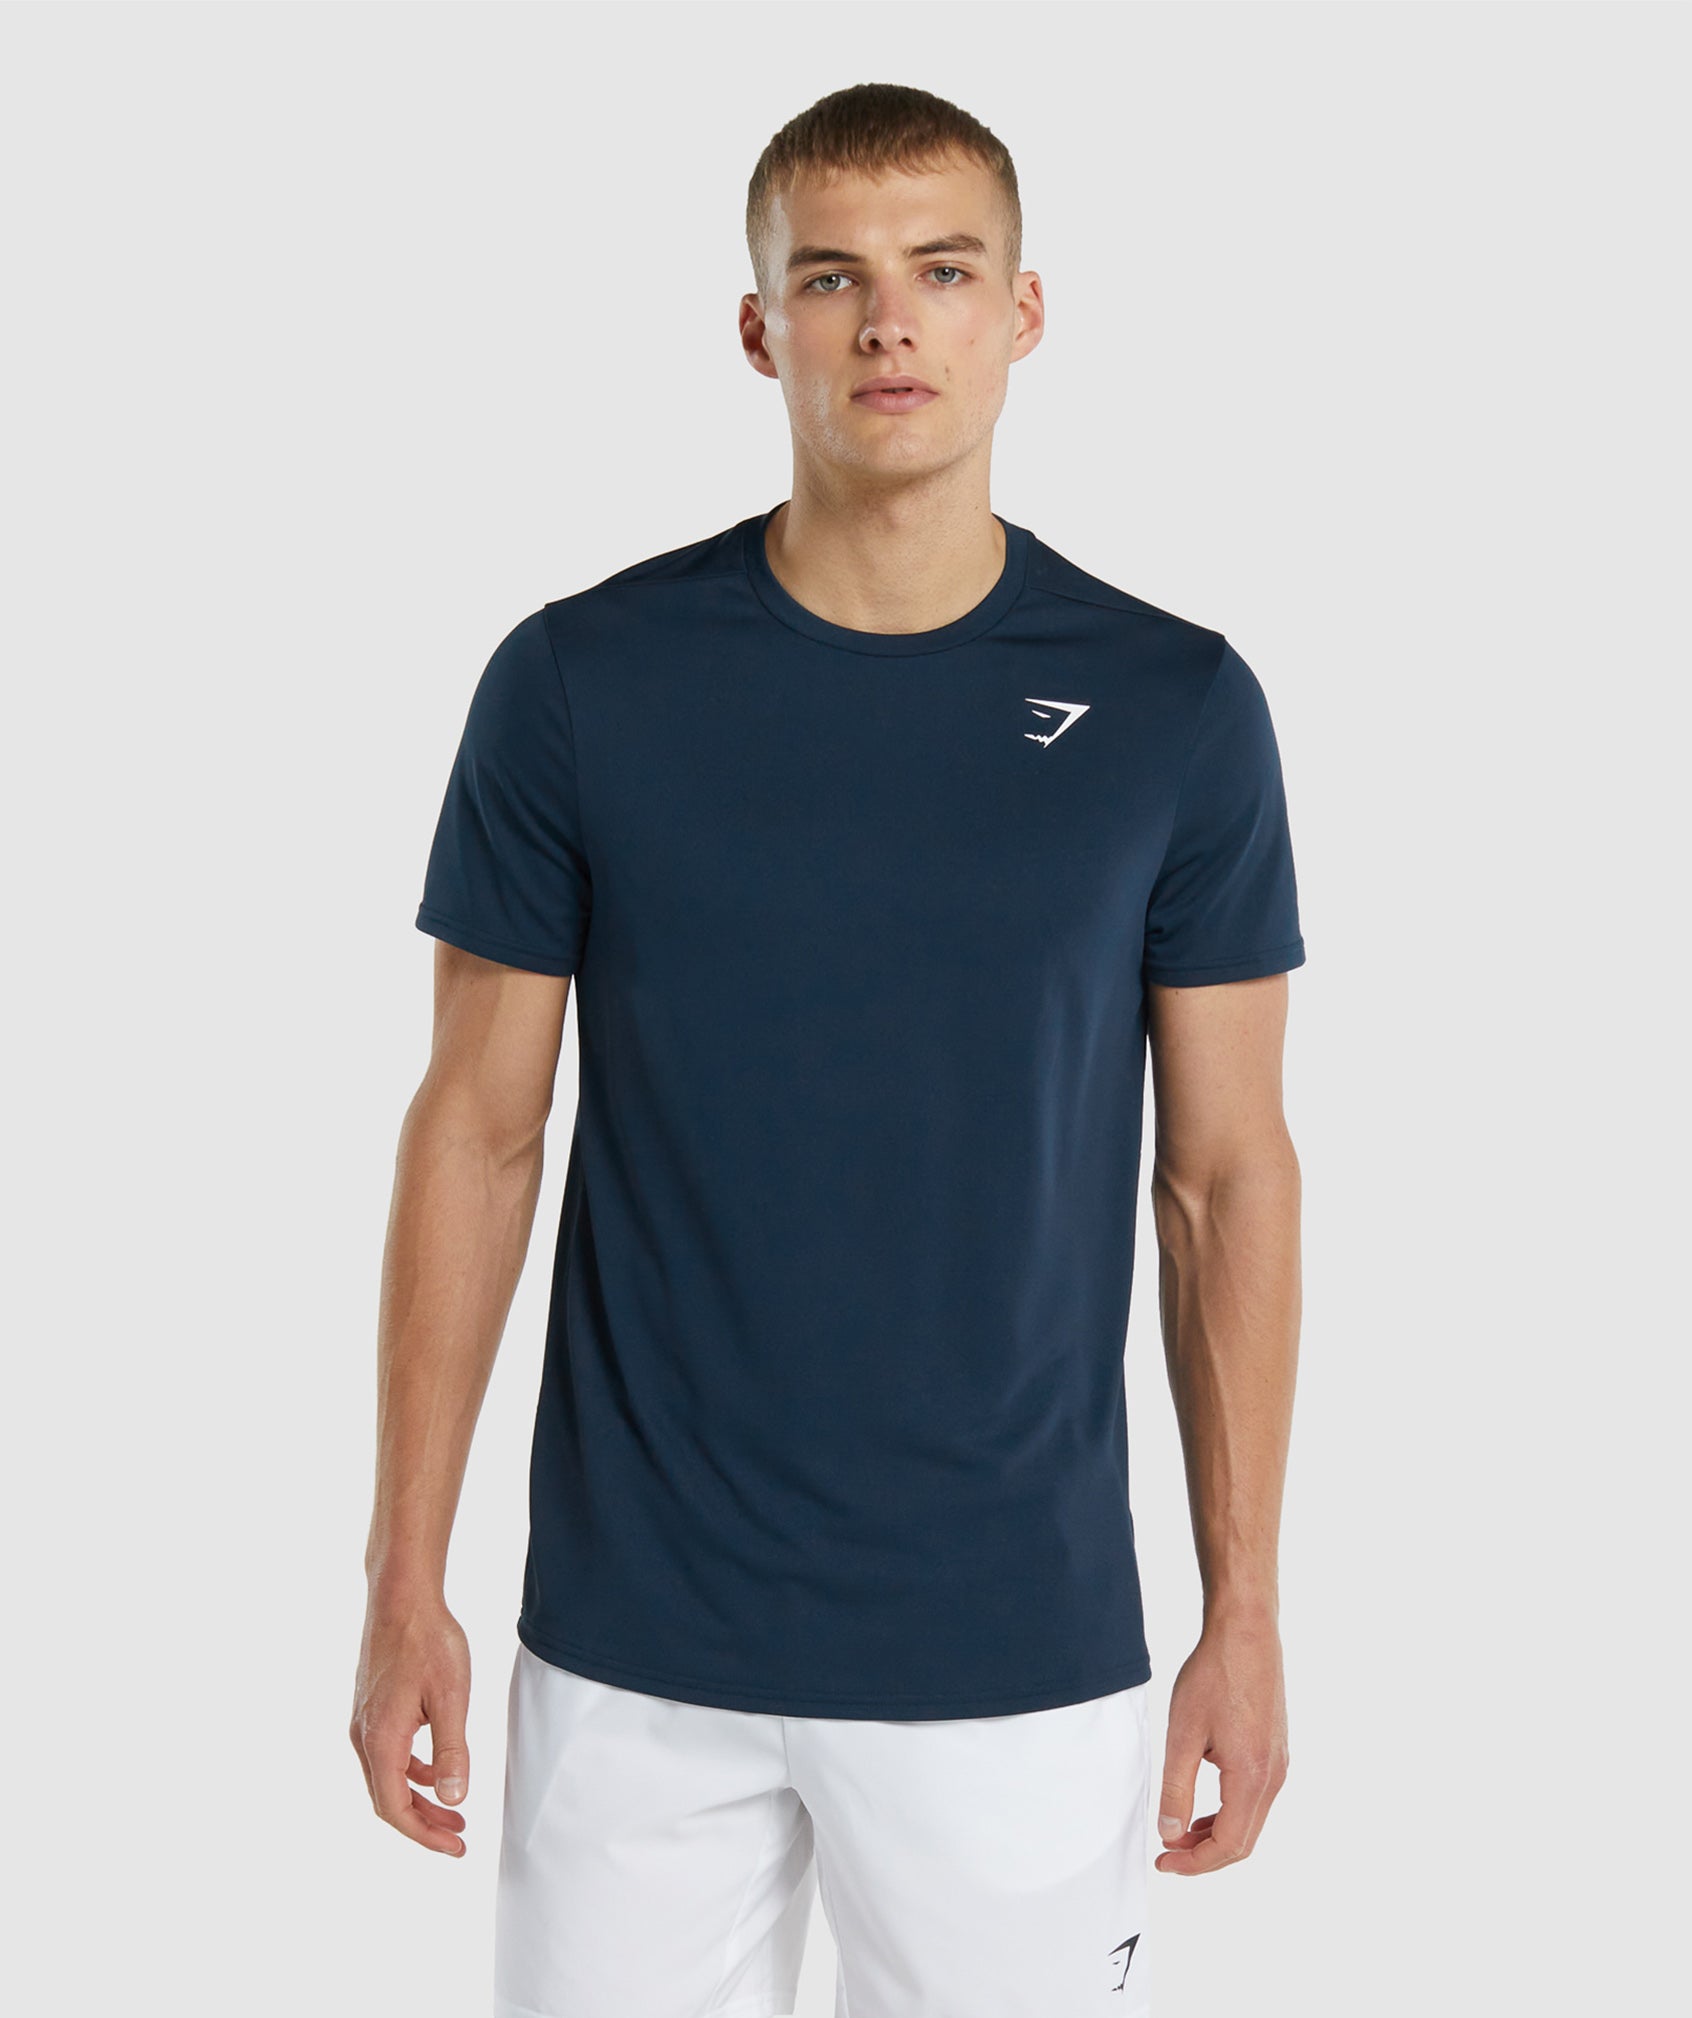 Gymshark Men's Lifting Club T-Shirt Oversize Fit Aqua Blue A2A5C